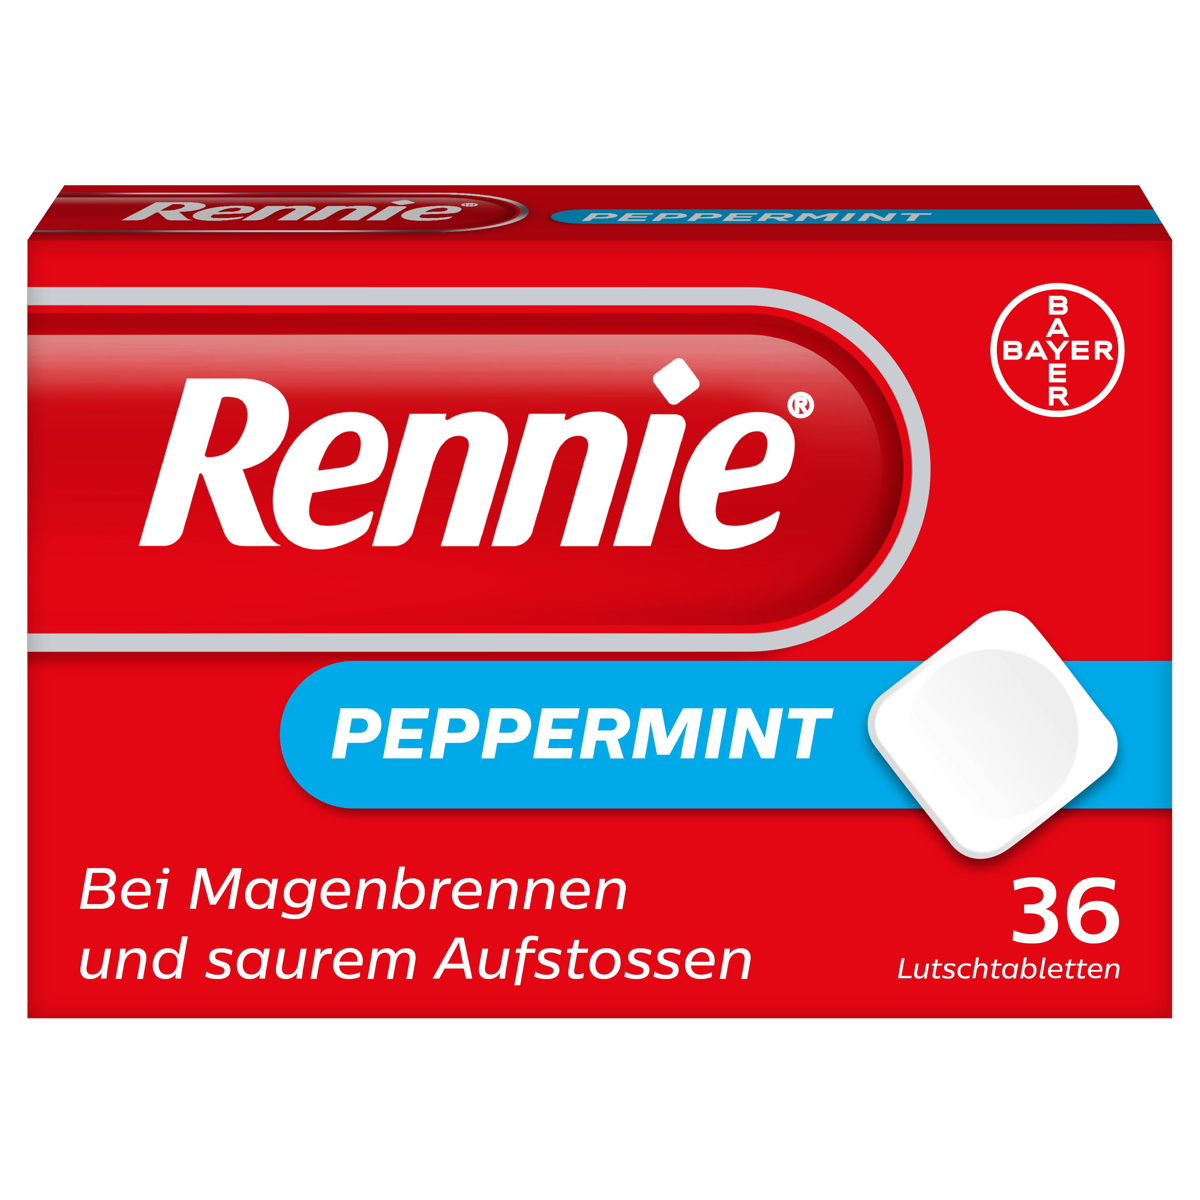 Rennie Peppermint Lutschtabletten 36 Stück